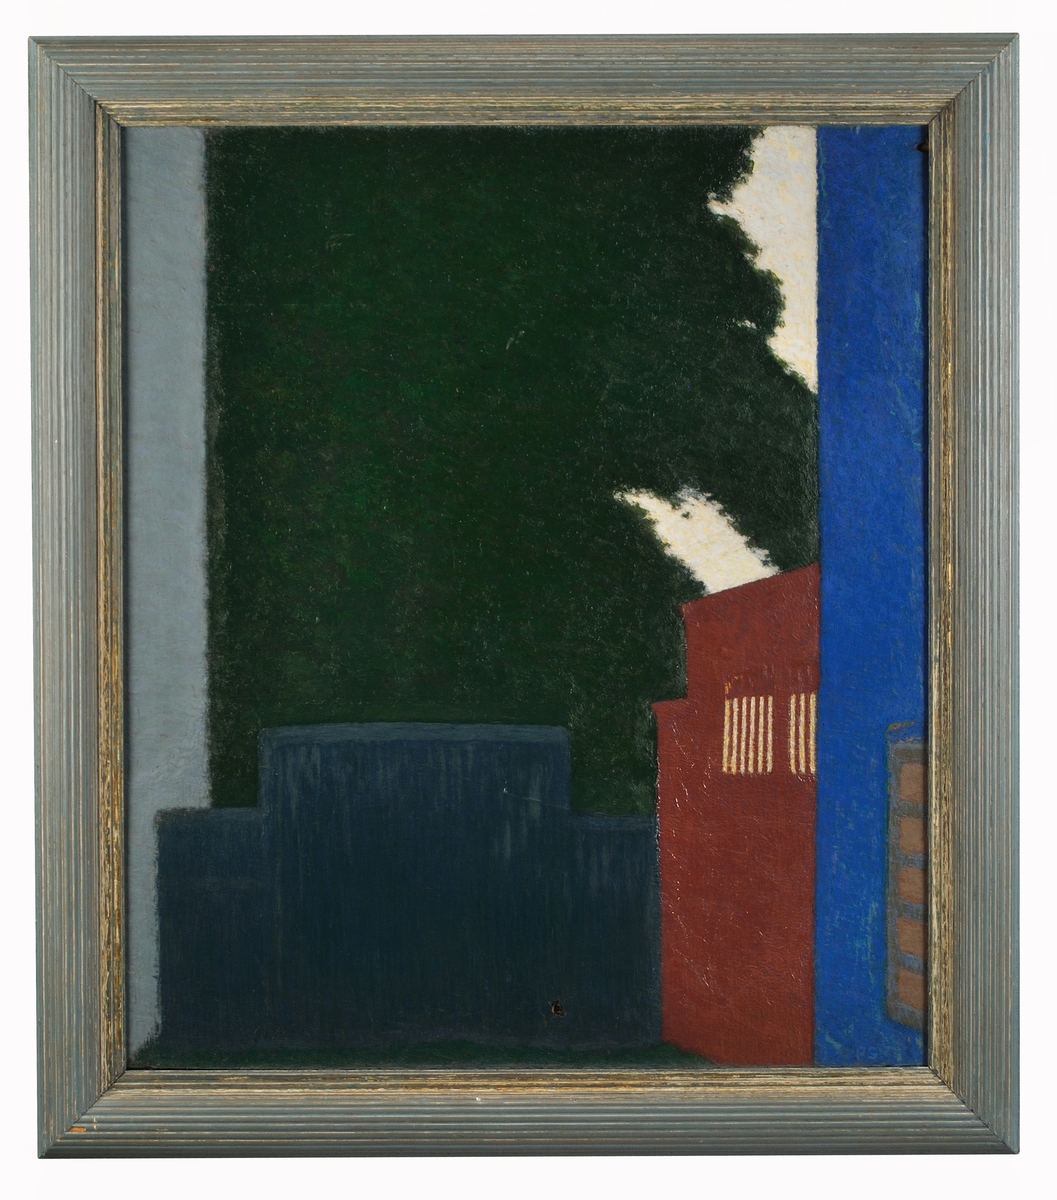 Oljemålning på duk, "Den röda och den svarta porten", av Pelle Swedlund.Till höger blått fält med femrutigt fönster, röd port med galleröppningar. T.v mört blågrönt fält, därefter ljusblågrått fond i mörkgrönt och vitt.